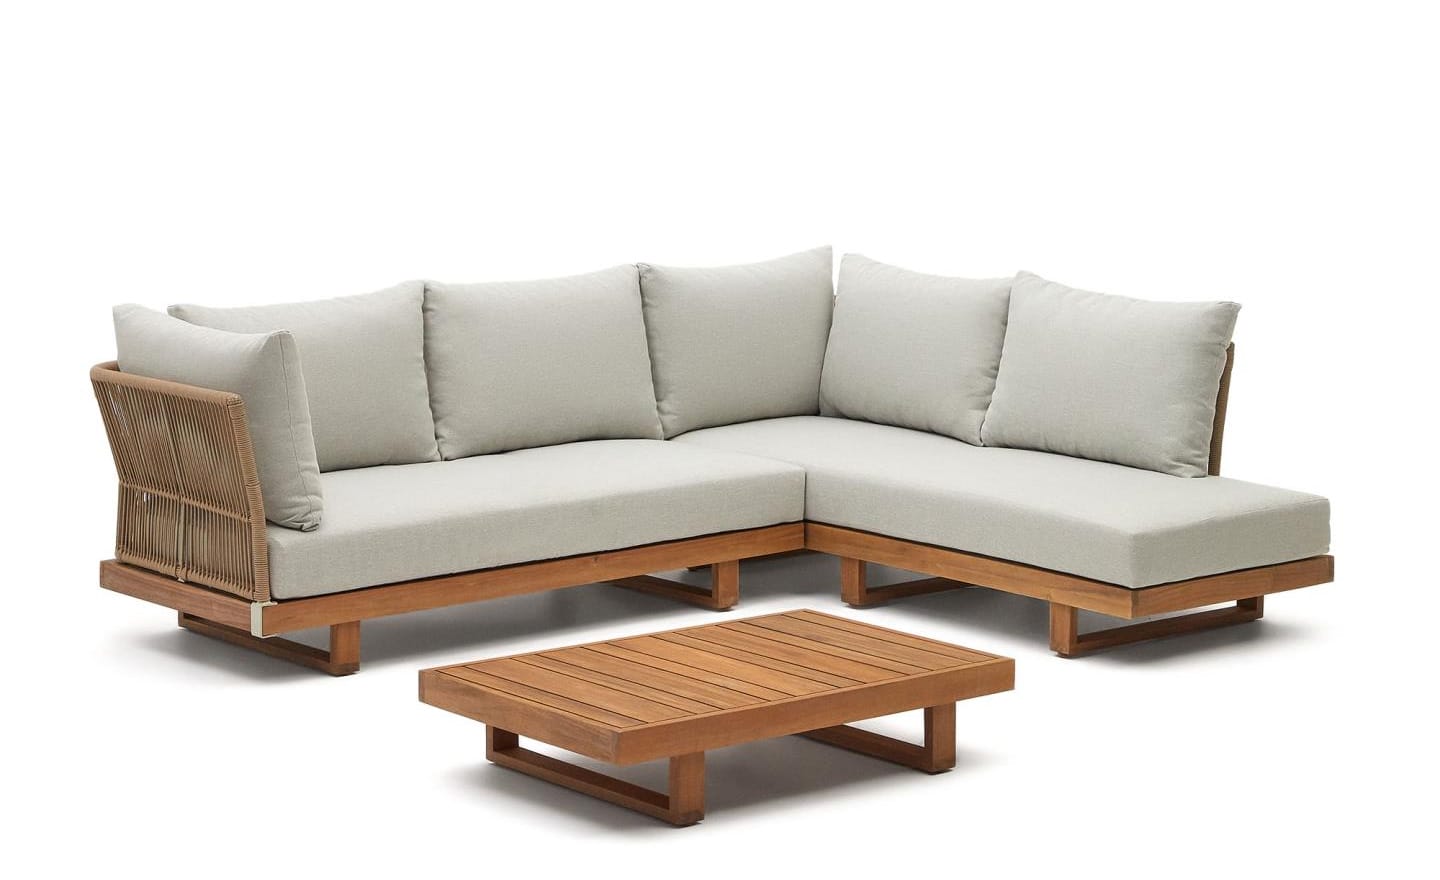 Conjunto de Exterior Raco, sofá de canto de 5 lugares, almofadas removíveis, mesa com acabamento de corda trançada à mão, resistente aos raios UV, para uso em ambientes internos e externos cobertos.